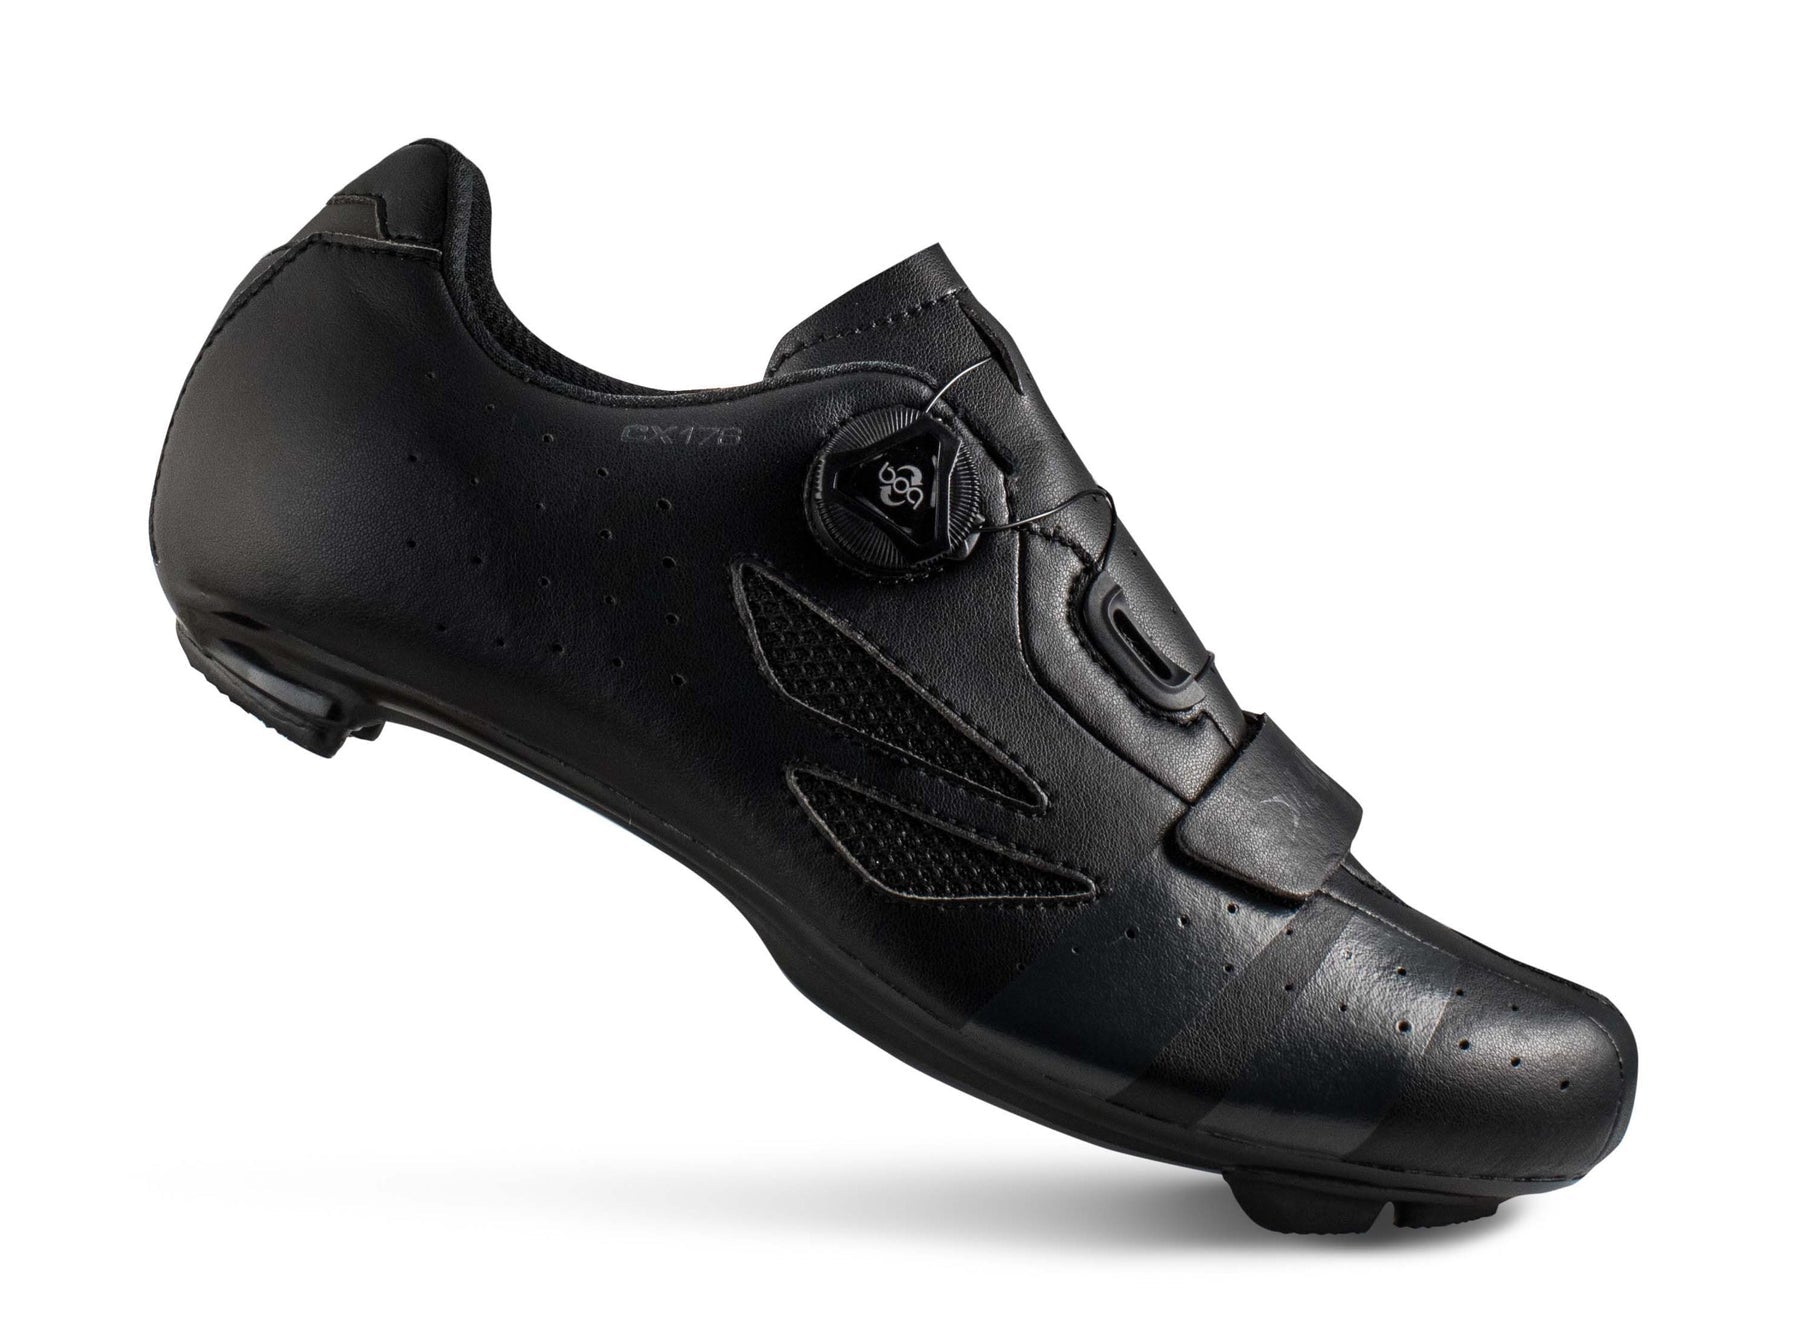 CX176-X Wide Road Cycling Shoe